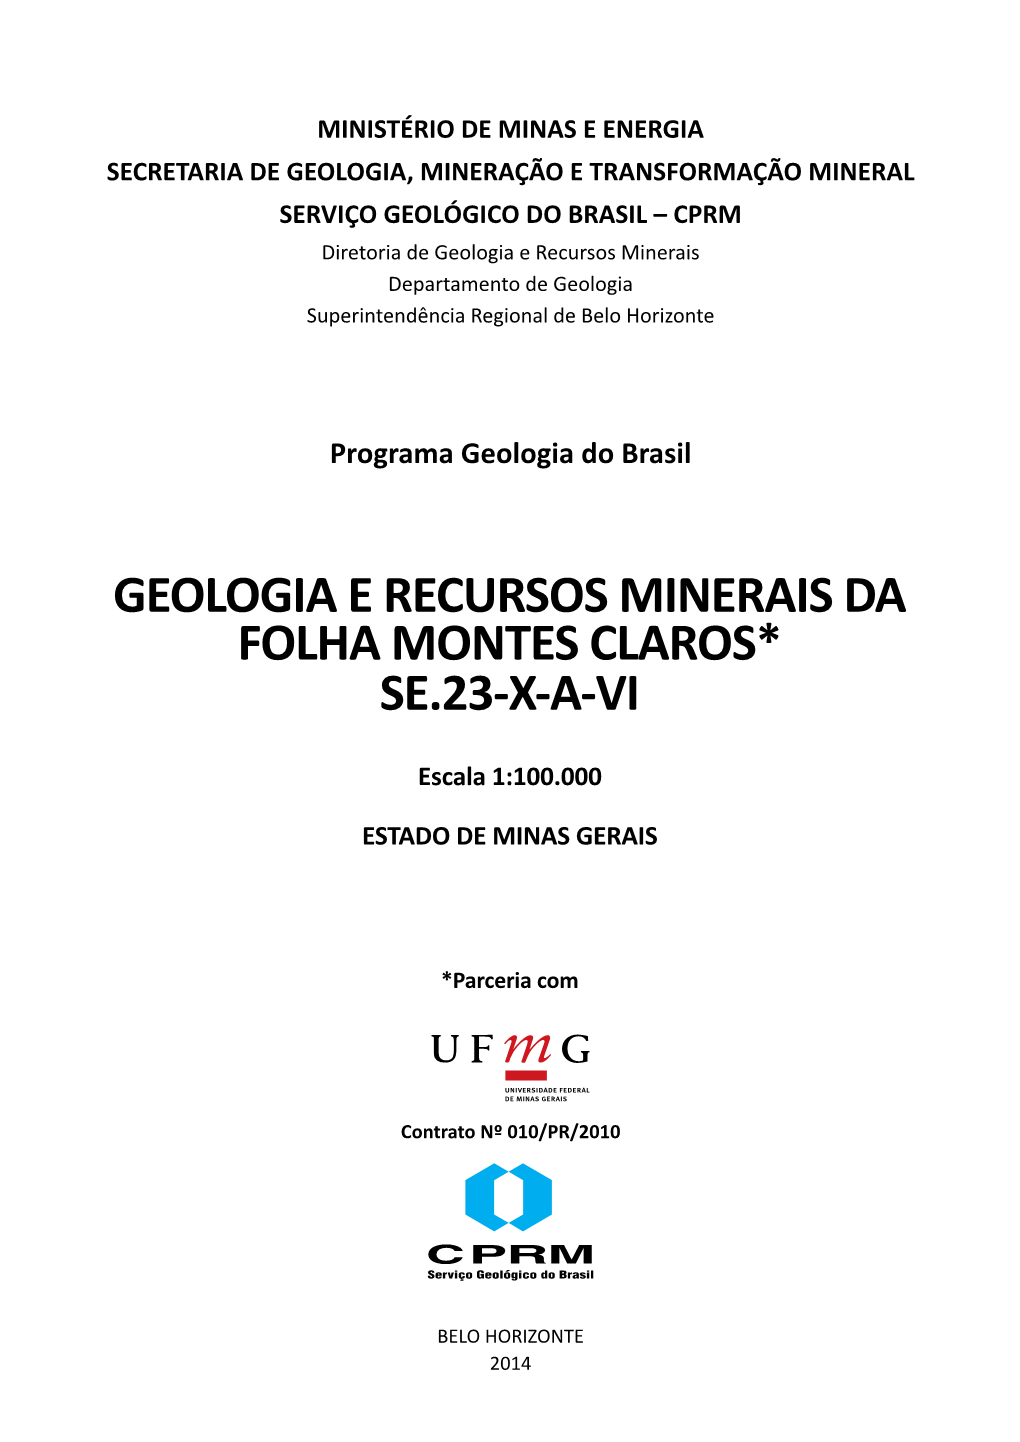 Geologia E Recursos Minerais Da Folha Montes Claros* Se.23-X-A-Vi